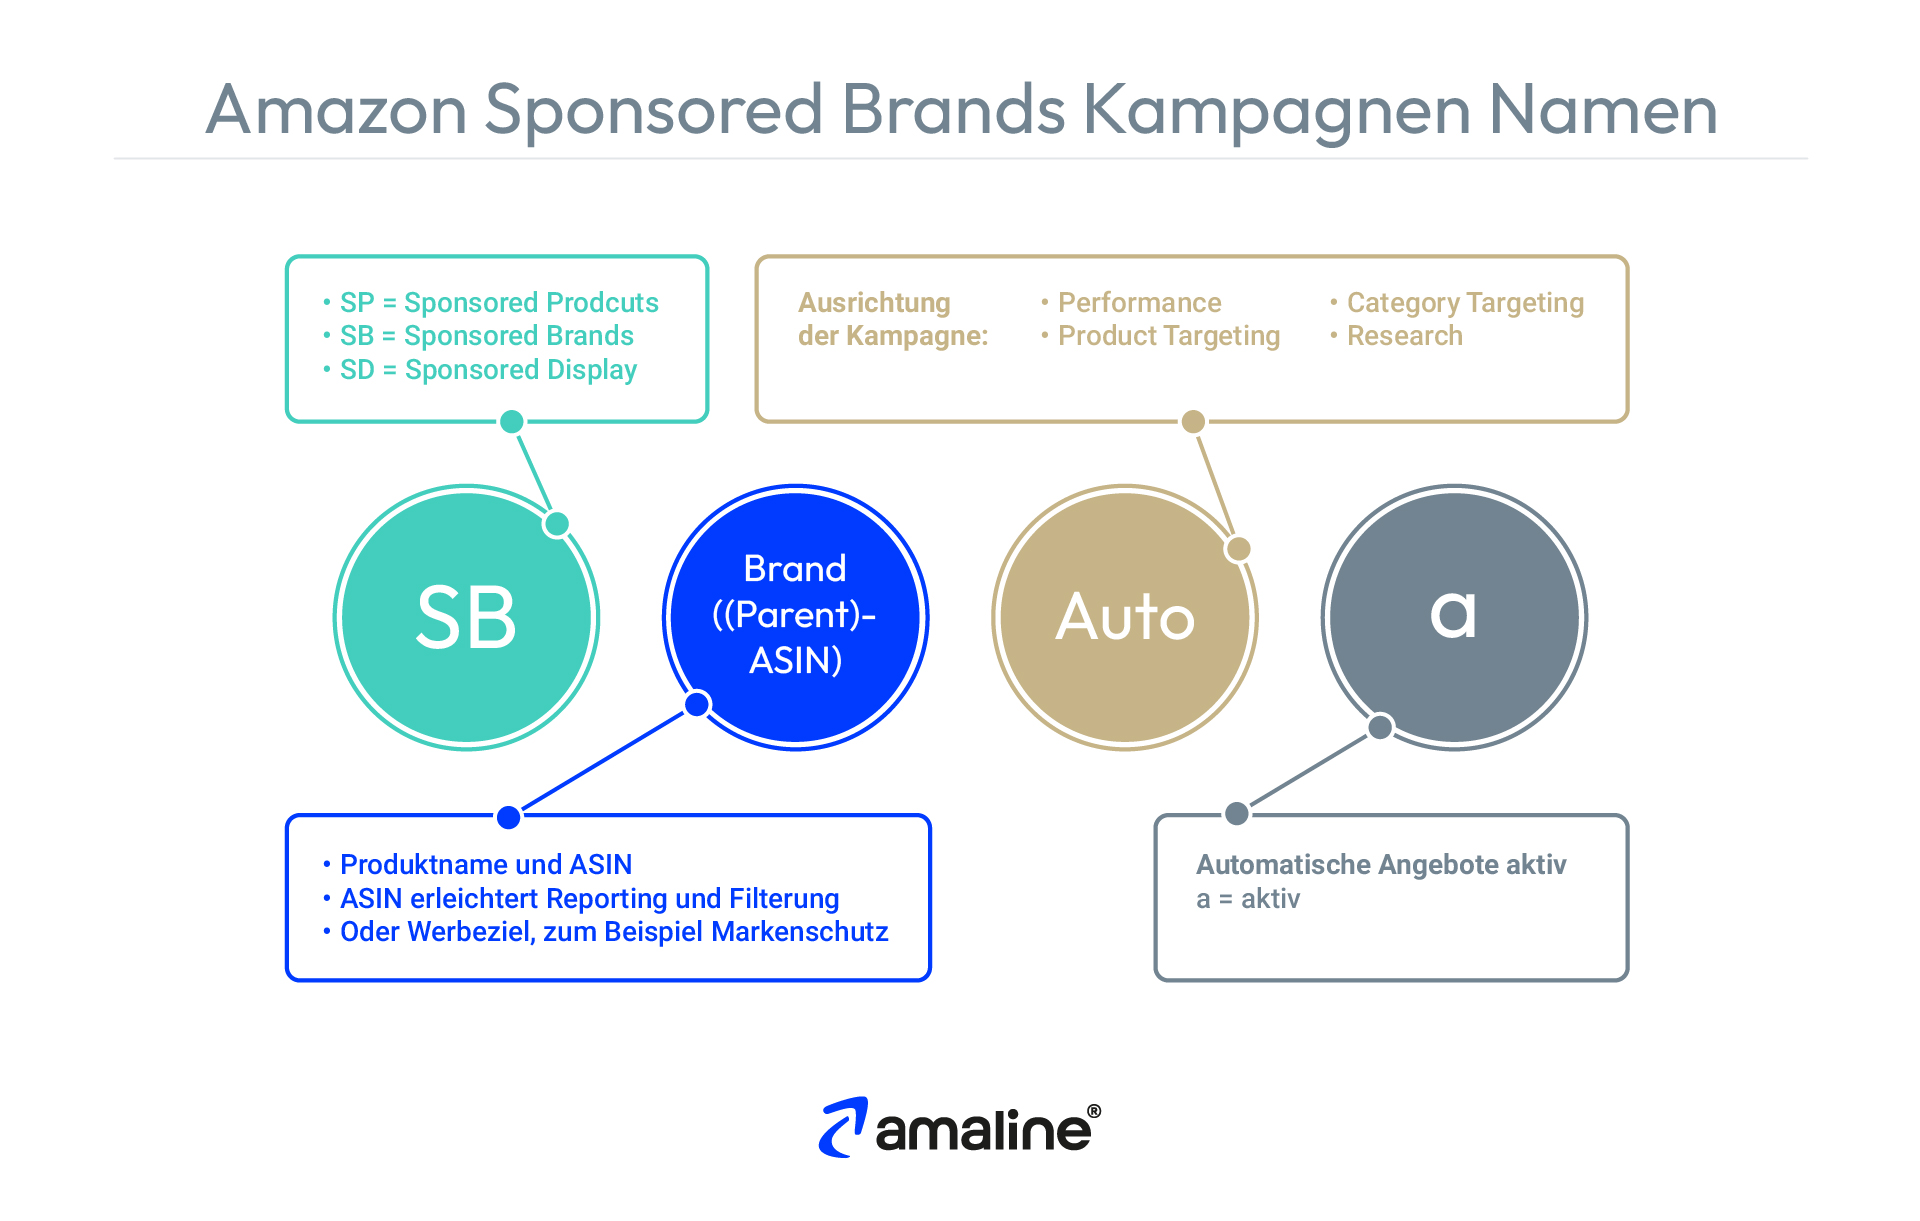 Die Grafik erklärt, wie man Sponsored Brands Kampagnen einheitlich benennen kann.